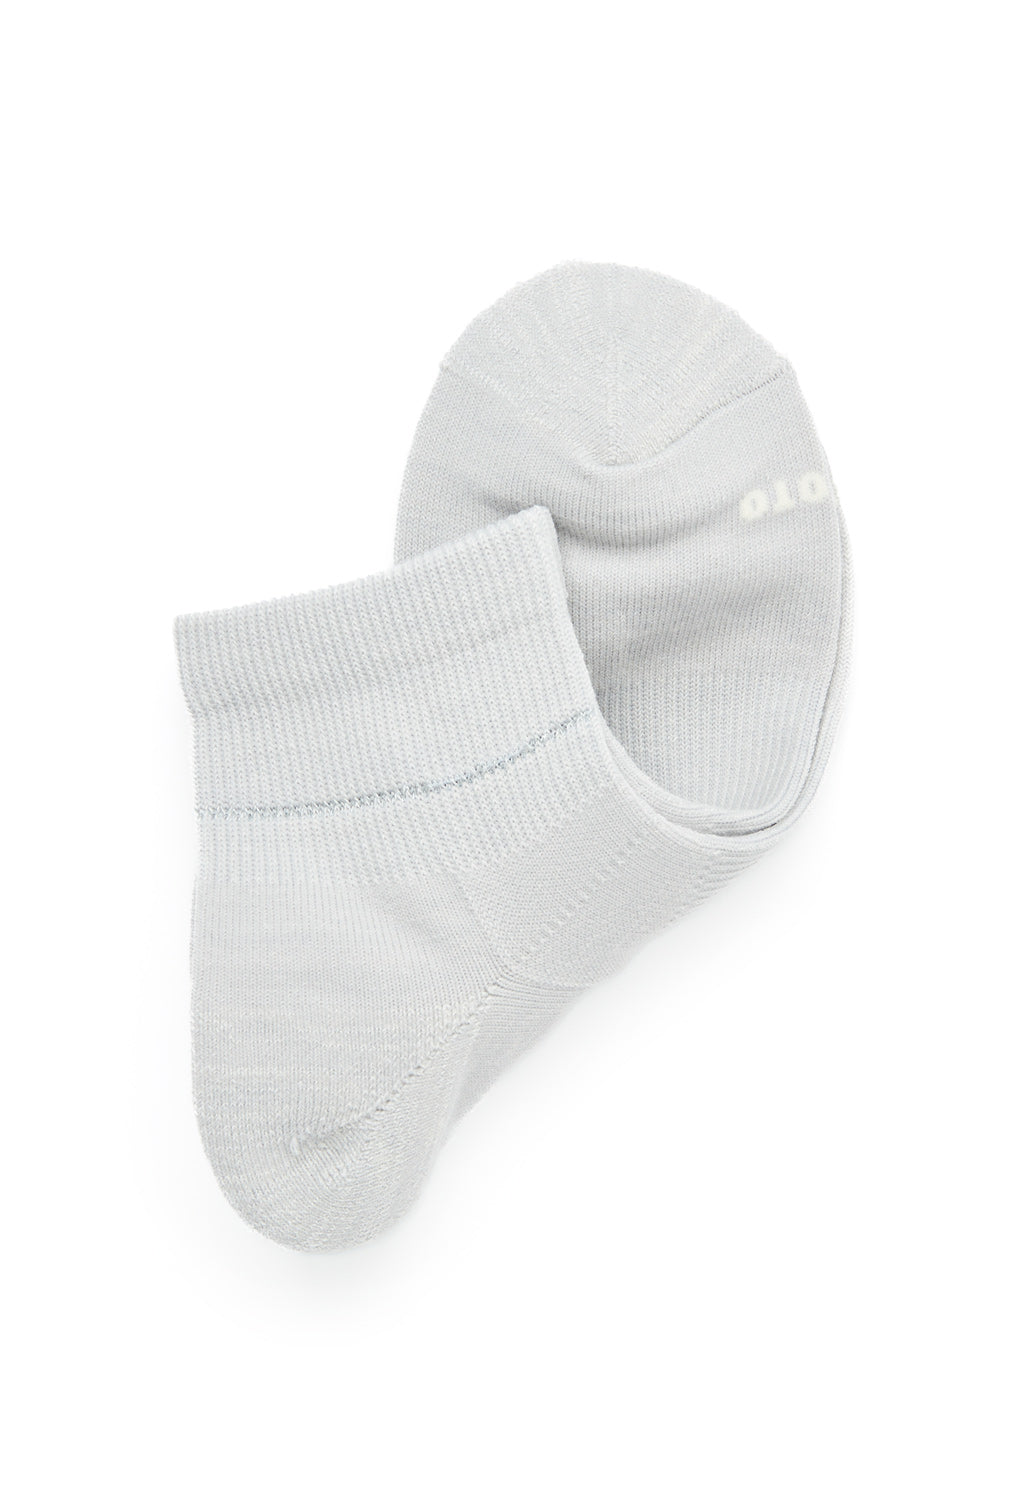 Rototo Allrounder Merino Ankle Socks - Light Grey